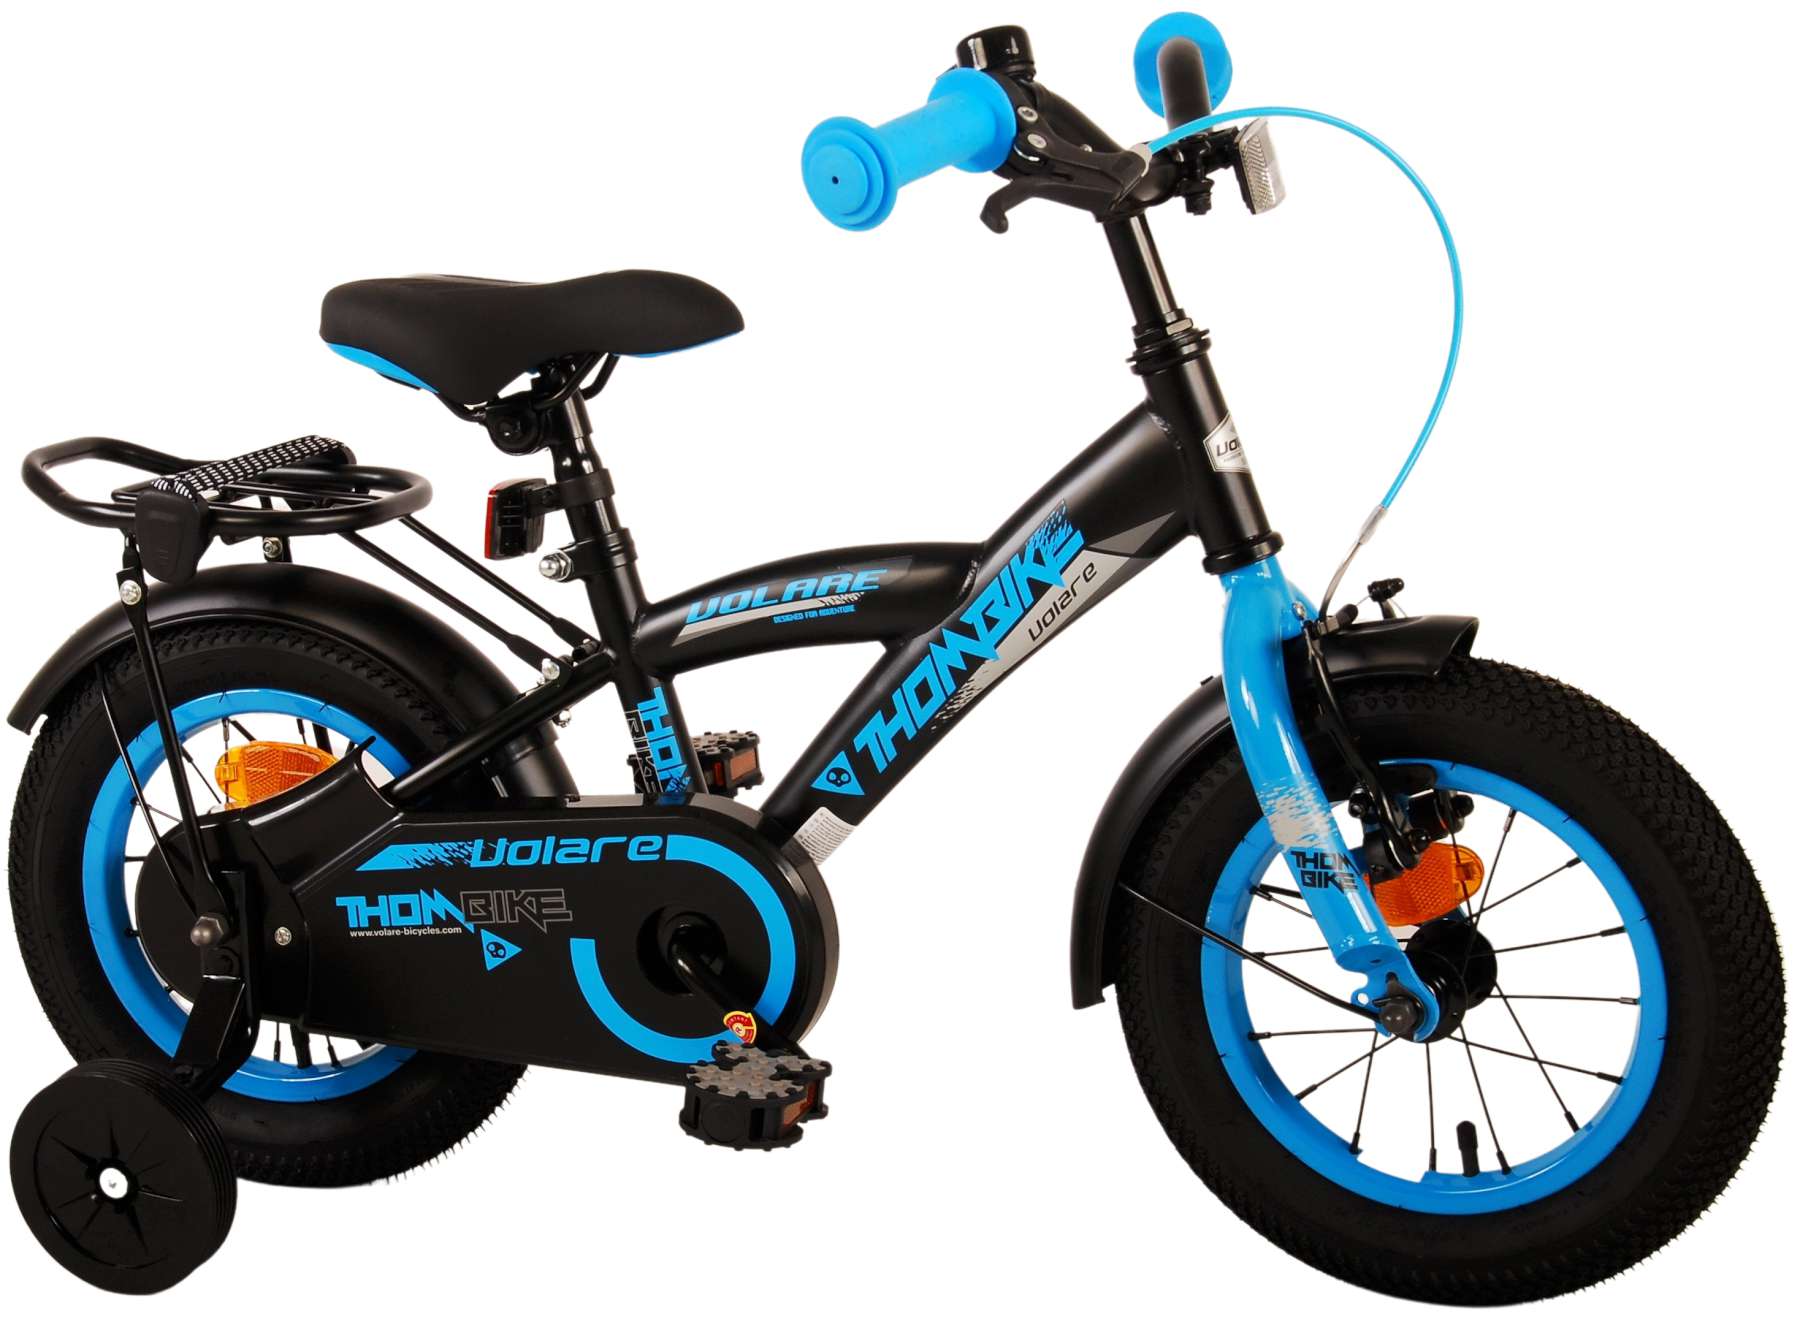 Kinderfahrrad Thombike für Jungen 12 Zoll Kinderrad in Schwarz Blau